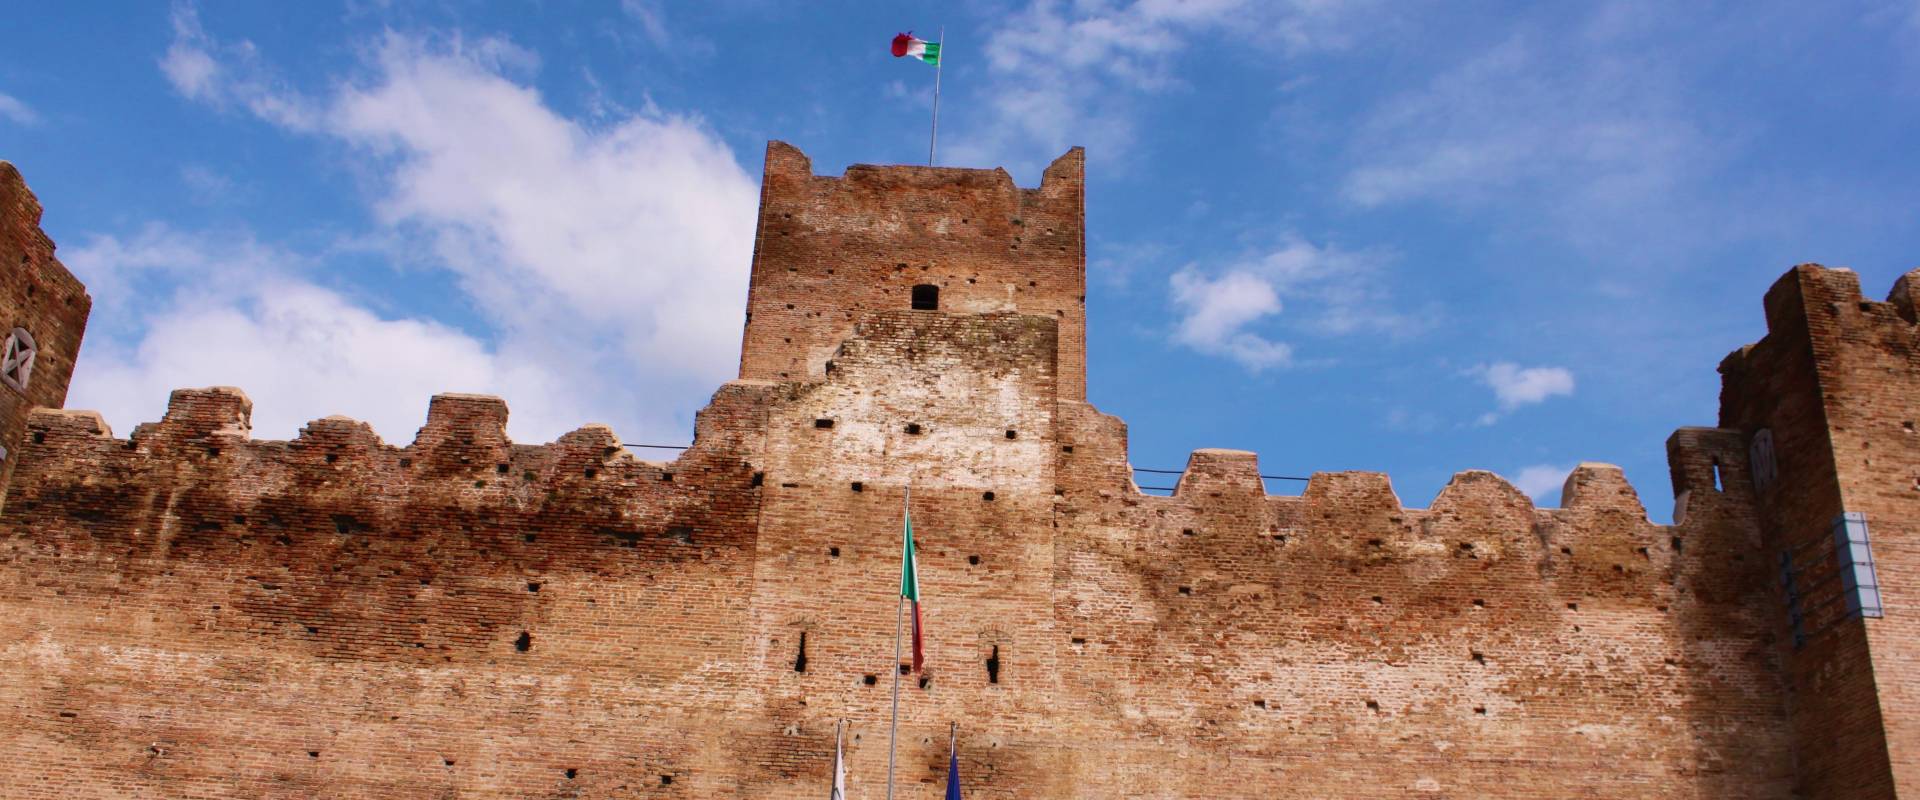 La Rocca medievale di Reggiolo foto di Alebassoli